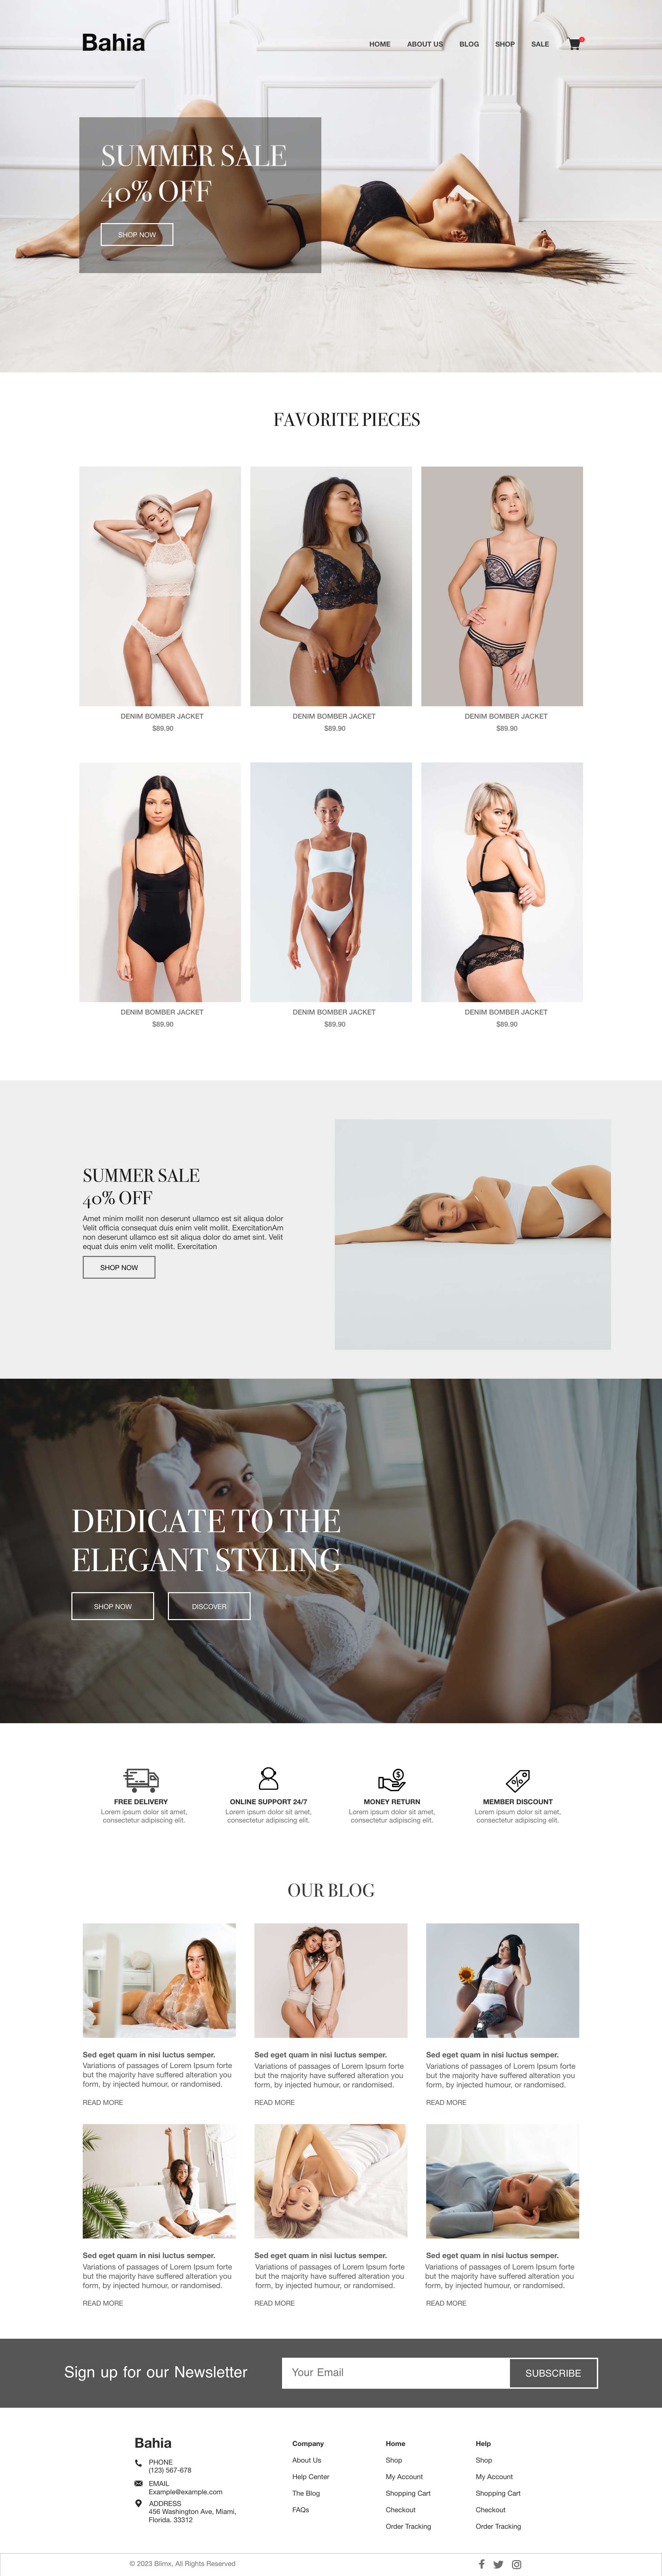 Women's Lingerie Website Design